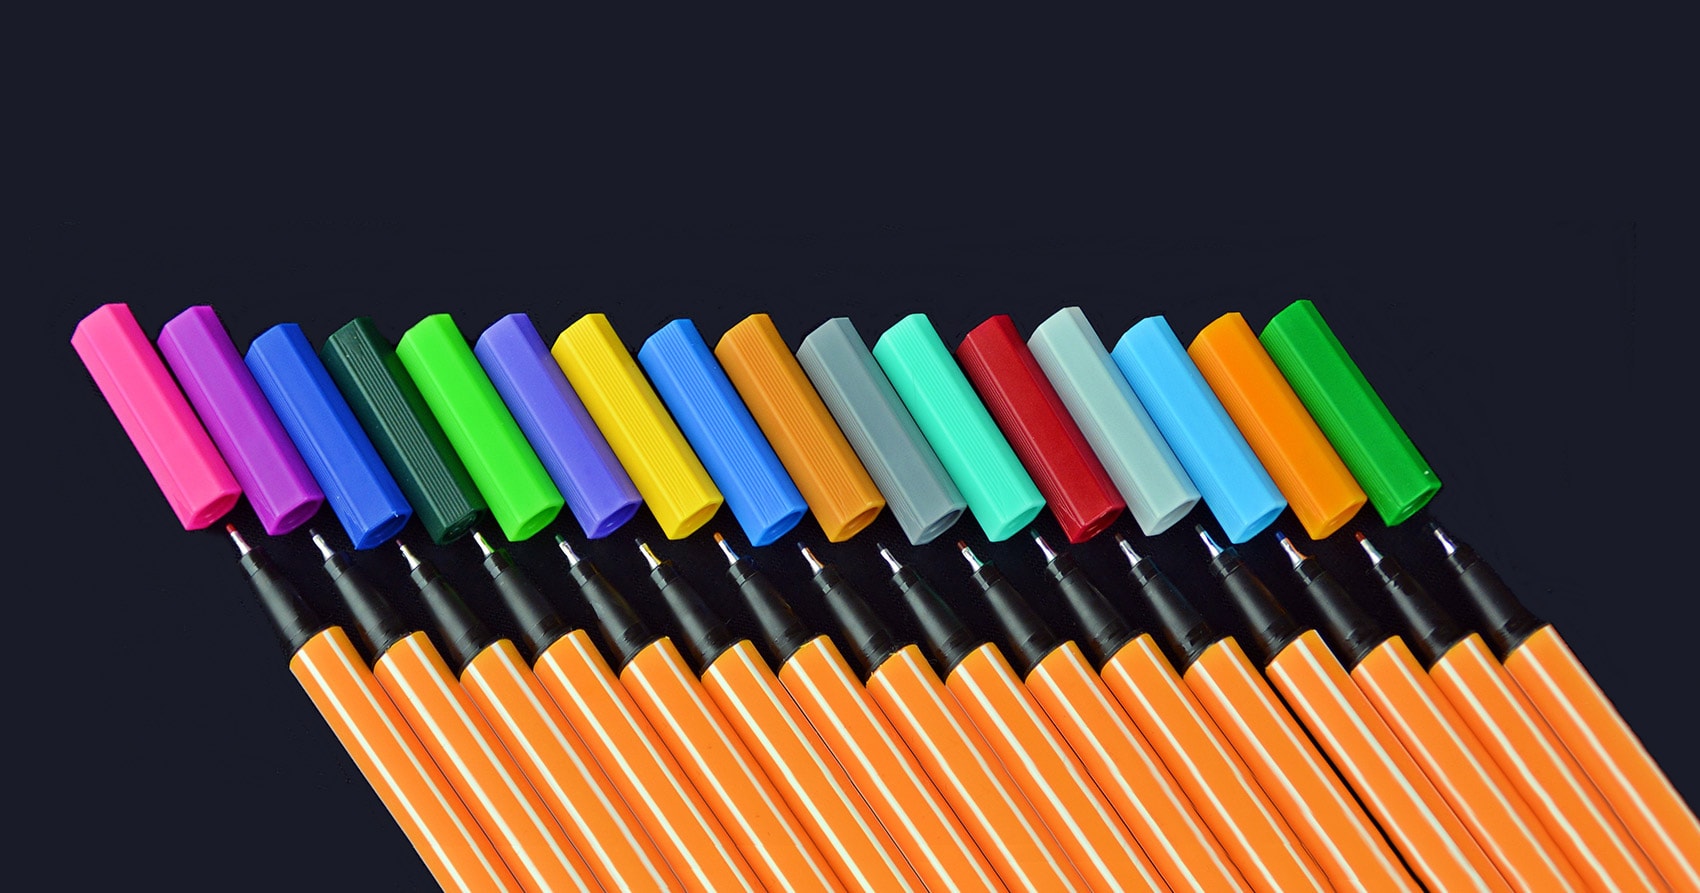 Seitenbild-Konkretisierungen: Exemplarische Planungen: Eine Reihe orangefarbener Stifte mit verschiedenfarbigen Kappen, darunter Rosa, Lila, Blau, Grün, Gelb und Rot, diagonal angeordnet vor einem dunklen Hintergrund.